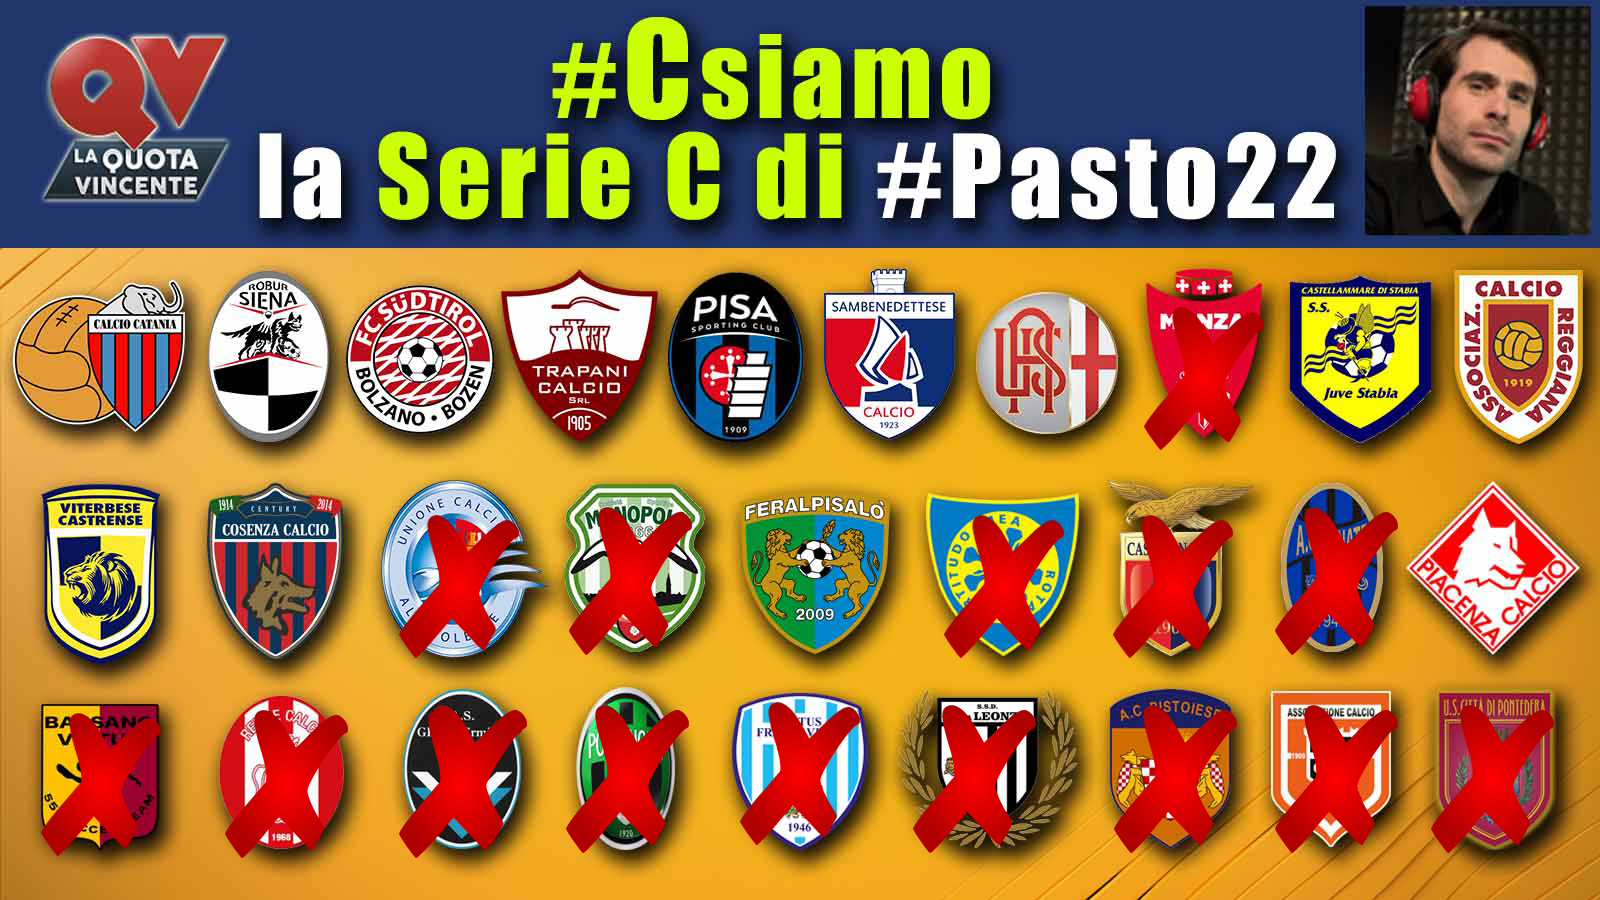 Pronostici Serie C 23 maggio: #Csiamo, il blog di #Pasto22 speciale playoff